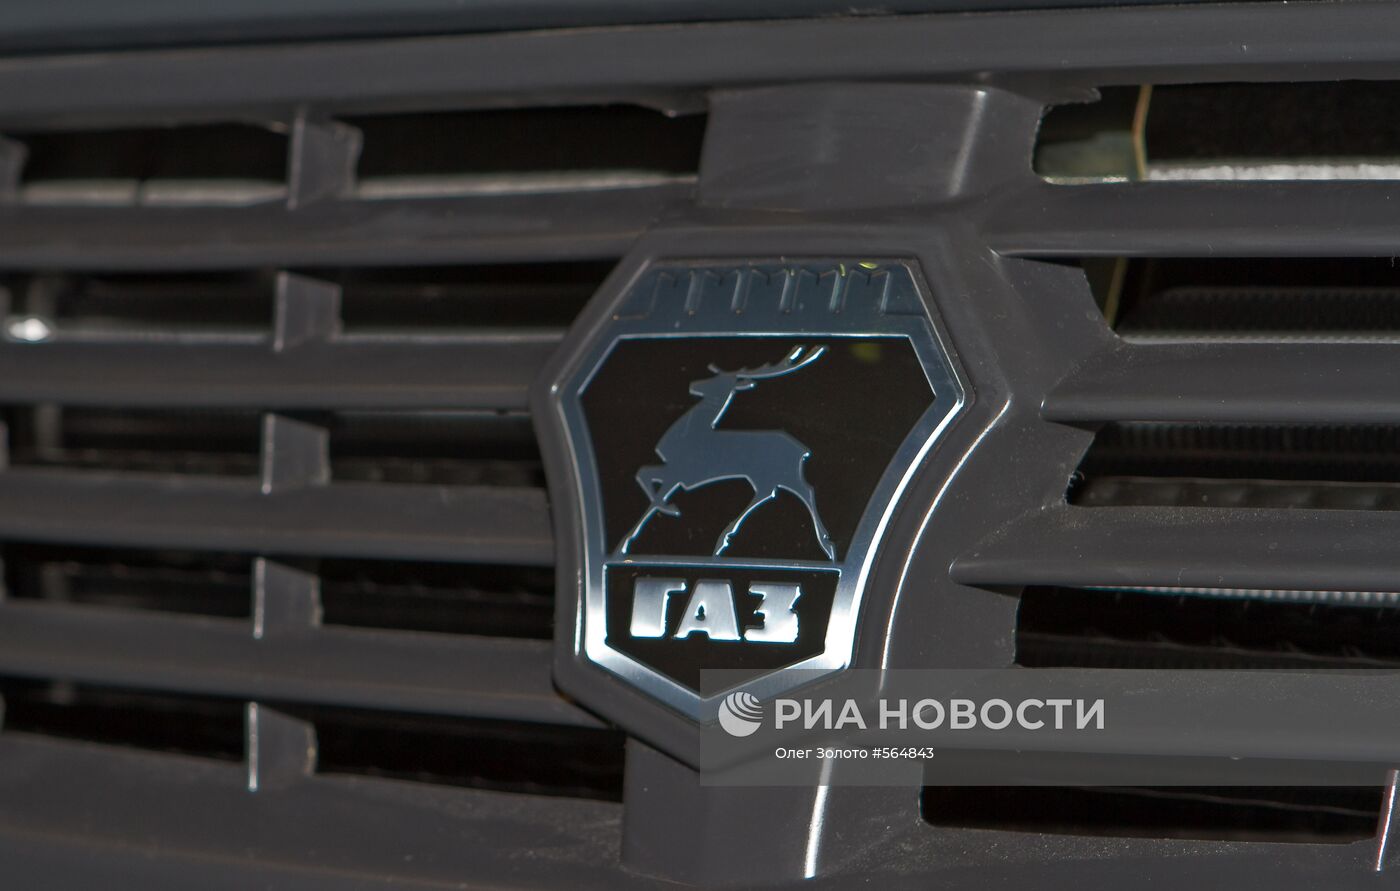 Эмблема Горьковского автомобильного завода